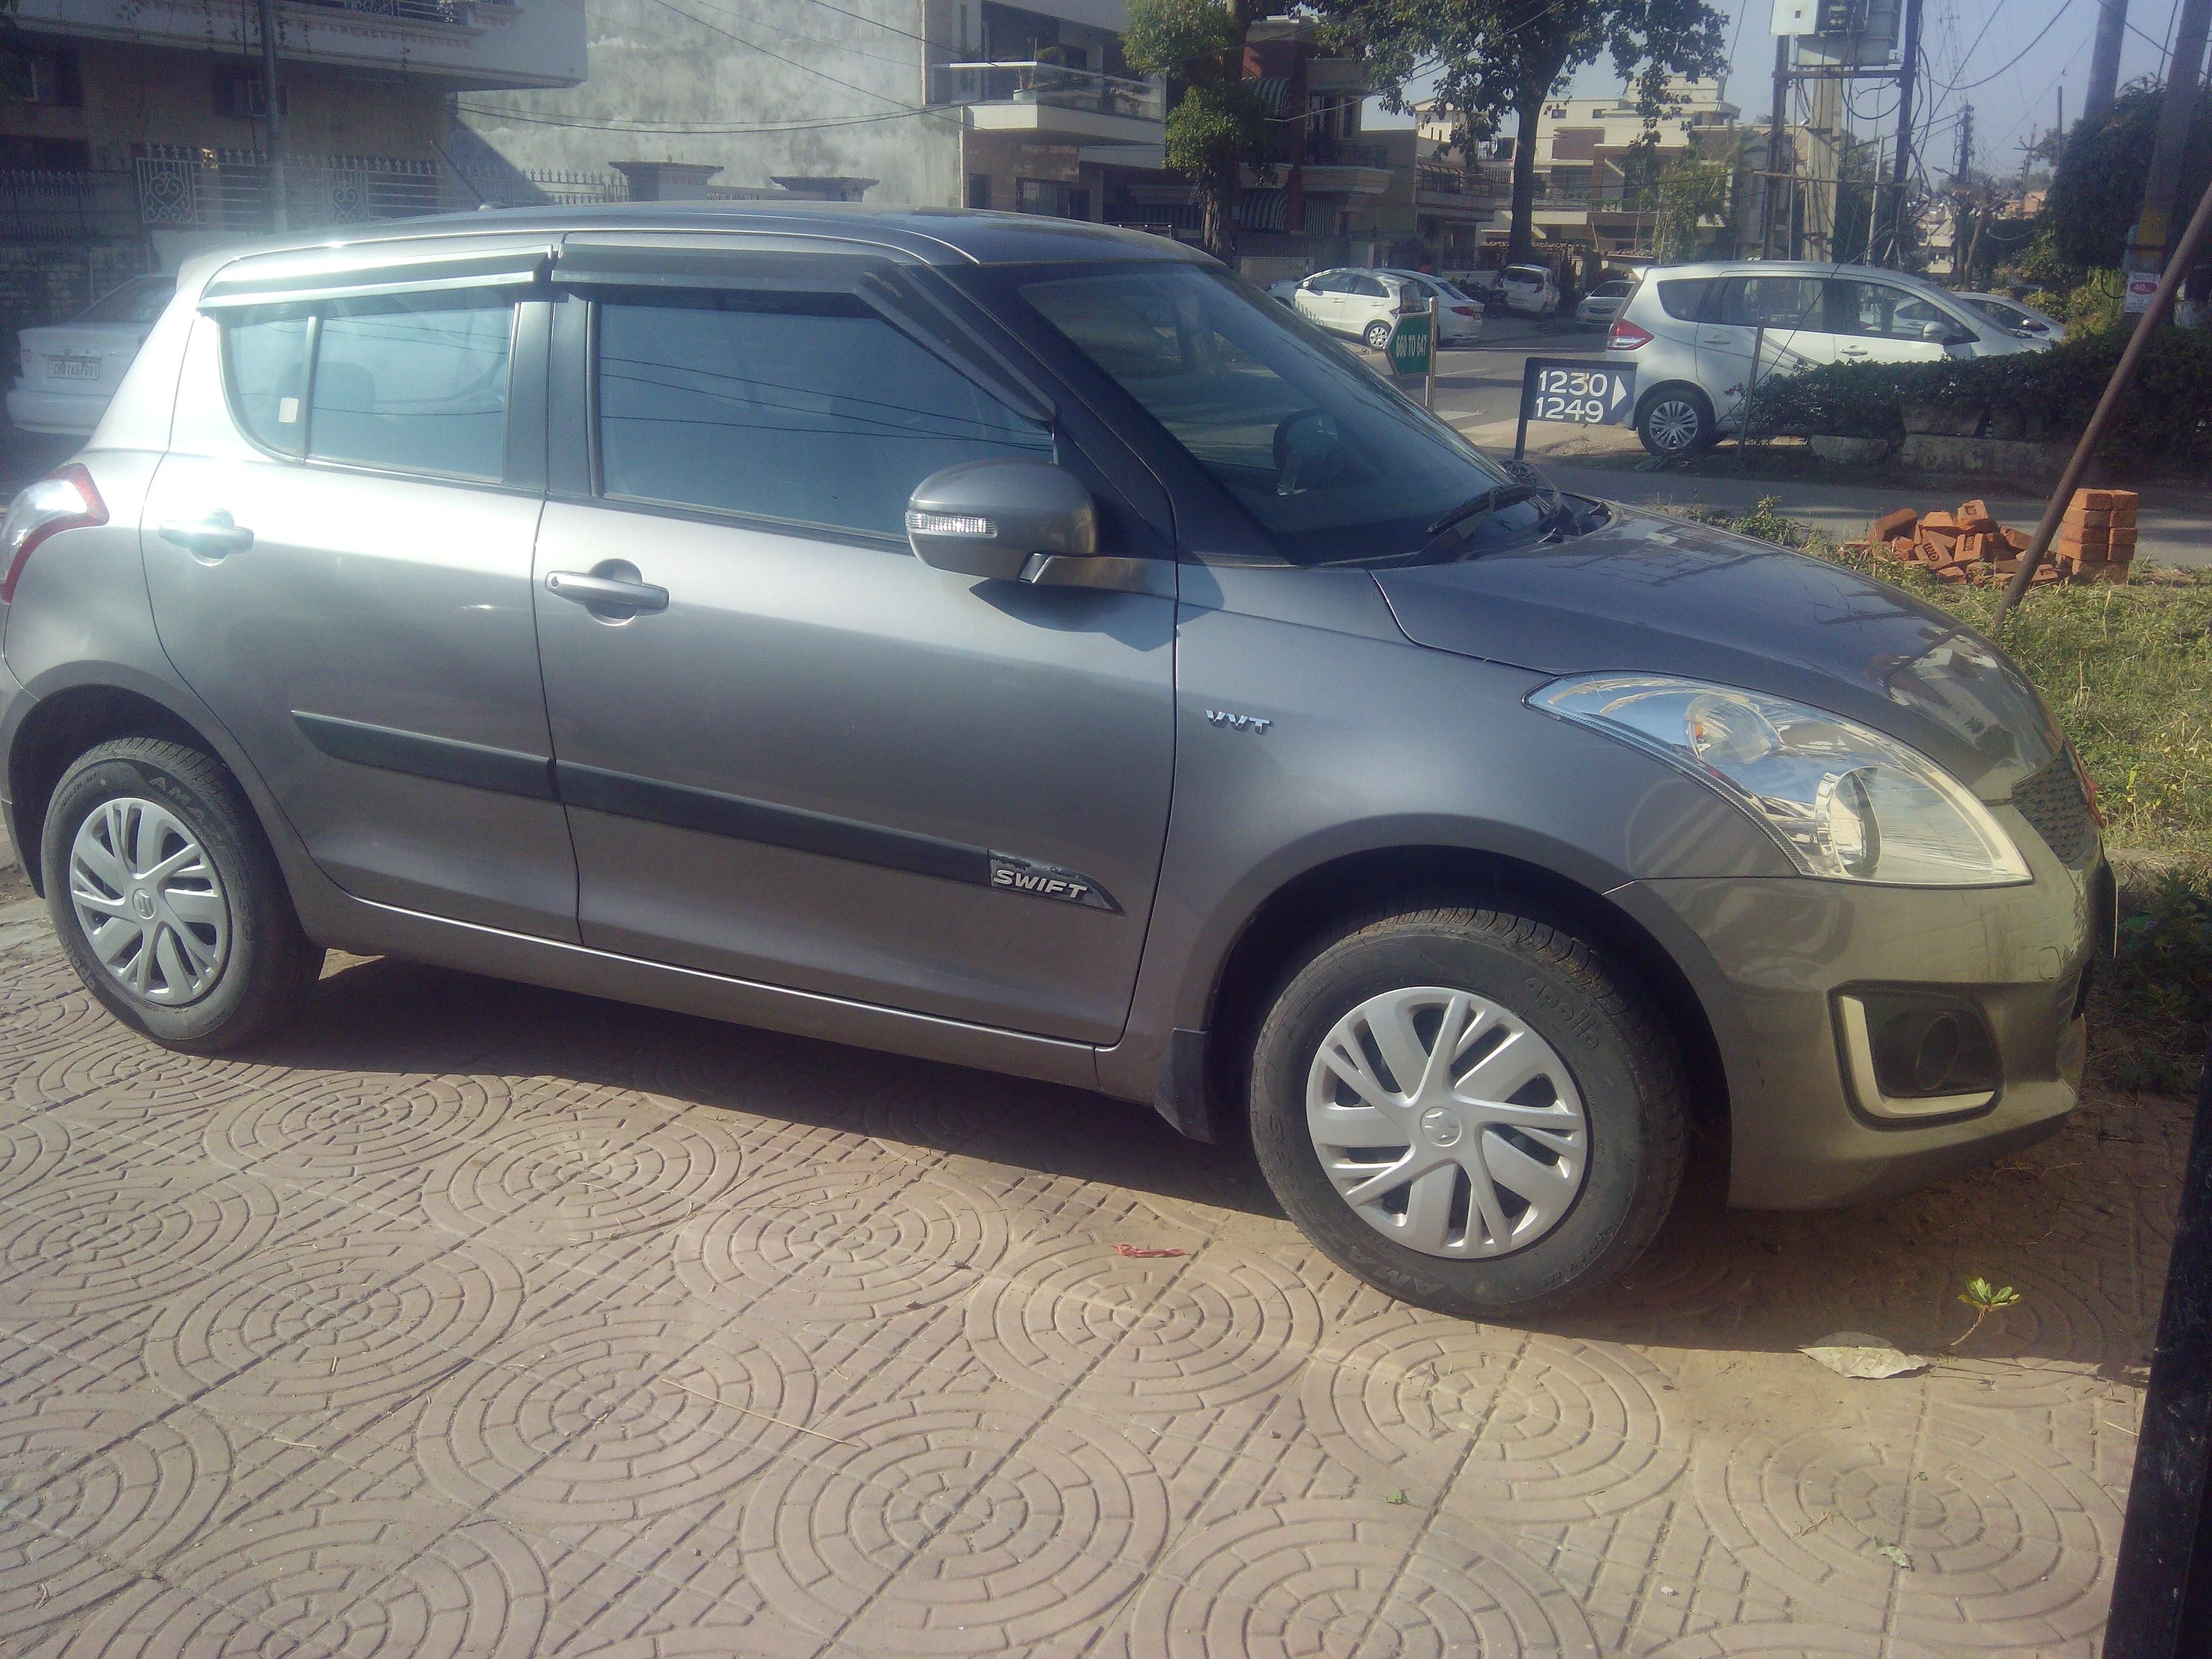 Maruti Suzuki Swift Car For Sale In Panchkula Id 1416828692 Droom